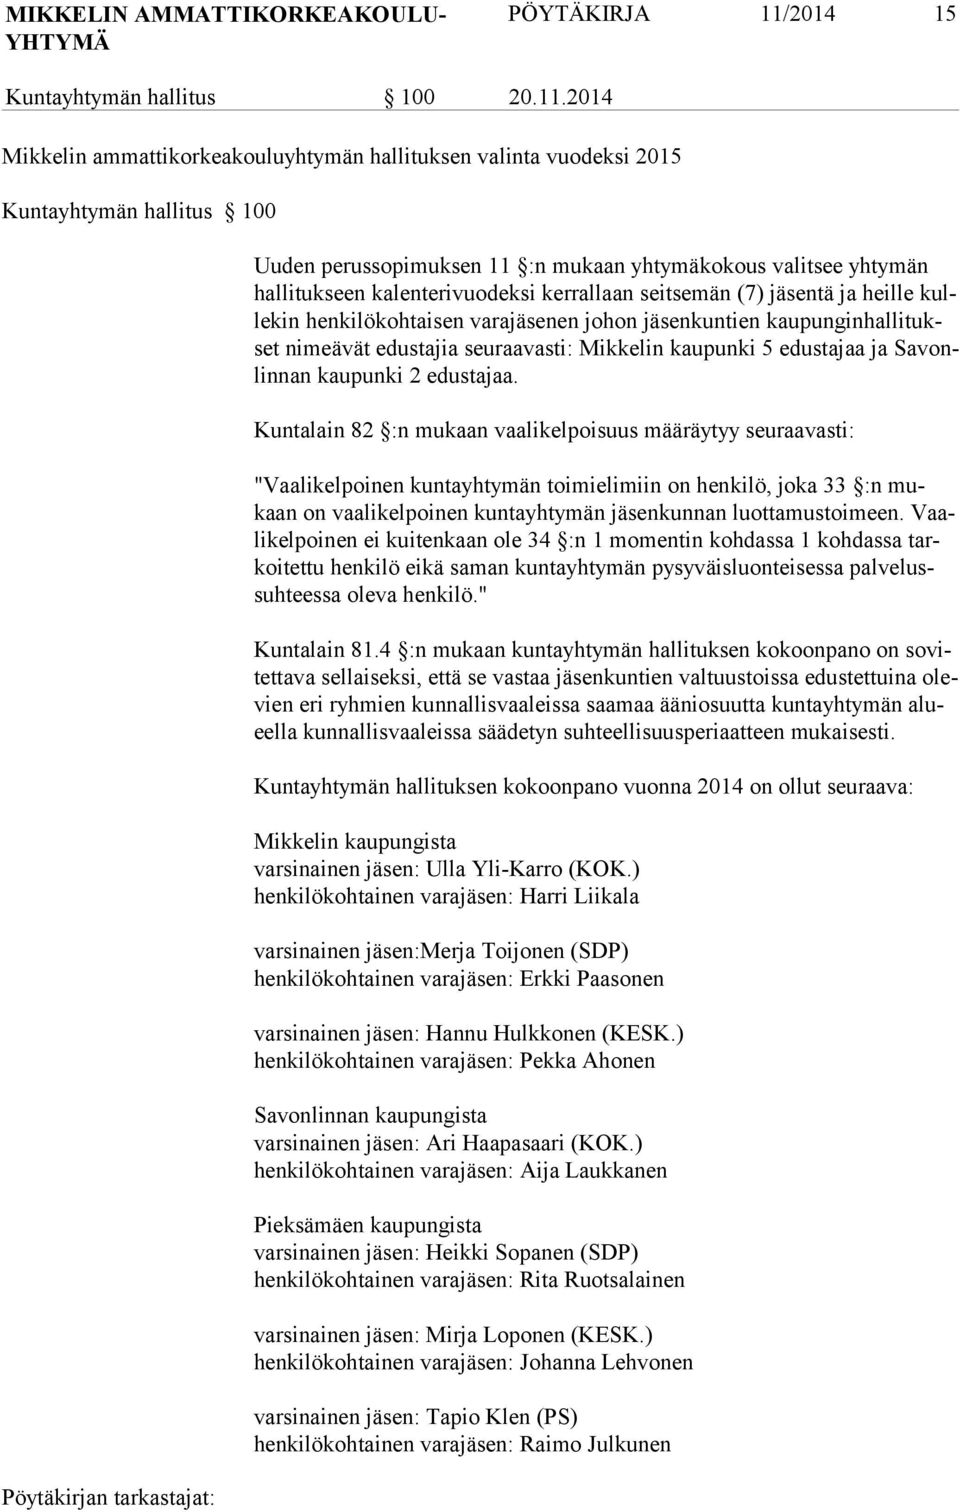 2014 Mikkelin ammattikorkeakouluyhtymän hallituksen valinta vuodeksi 2015 Kuntayhtymän hallitus 100 Uuden perussopimuksen 11 :n mukaan yhtymäkokous valitsee yhtymän hal li tuk seen kalenterivuodeksi